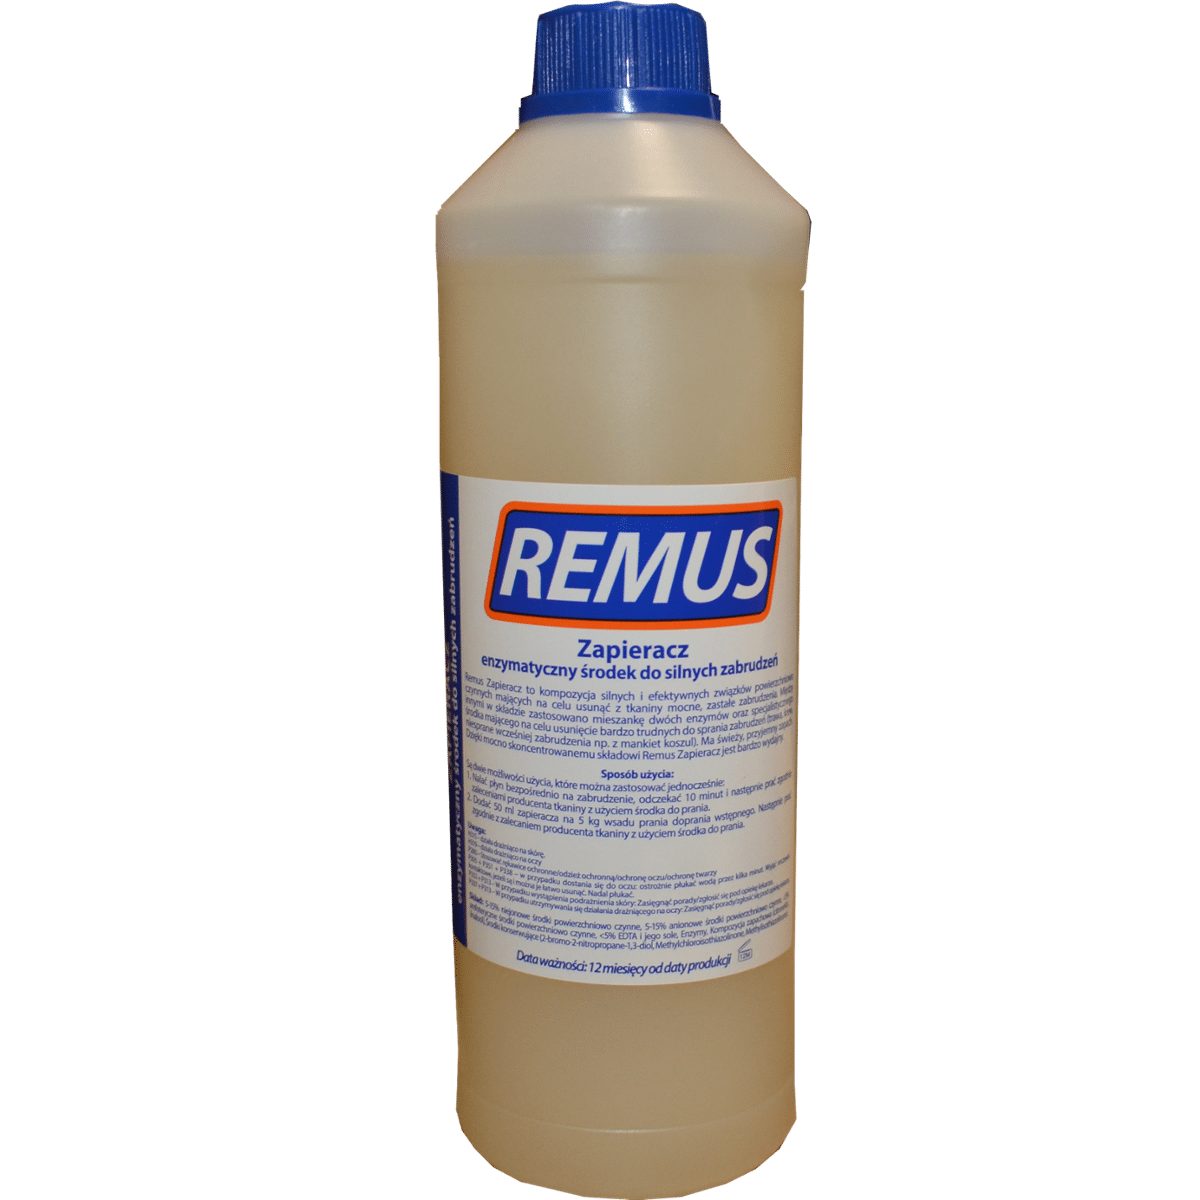 WIROMIX Remus Płyn Zapierający 1l Enzymatyczny Środek do Silnych Zabrudzeń